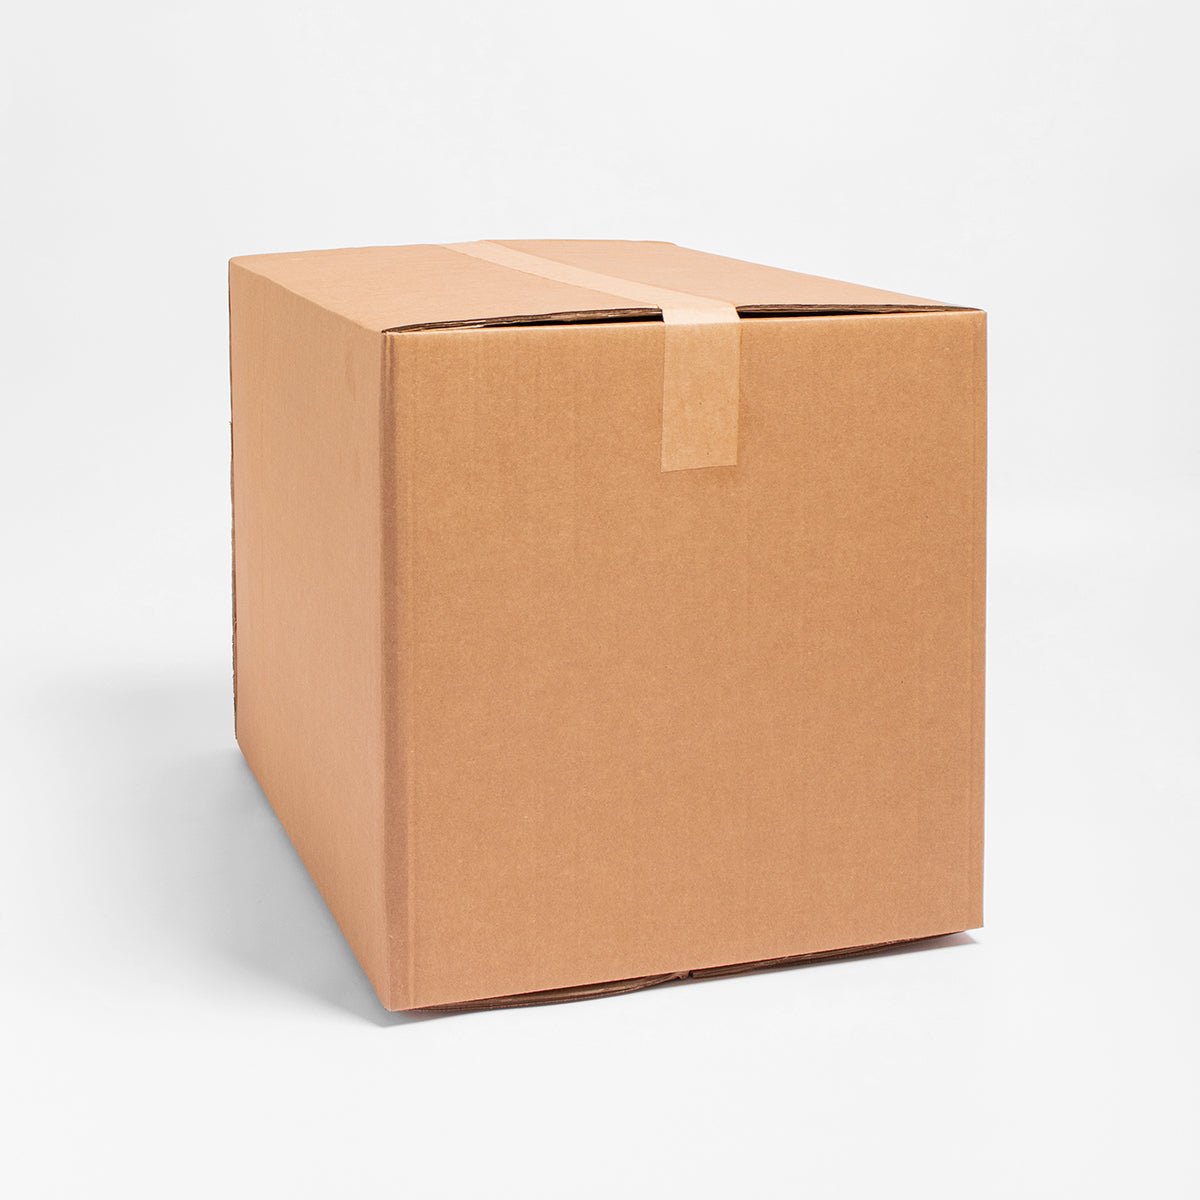 Caja de Cartón - 50x40x30 cm - Rectangular – Skyboxes